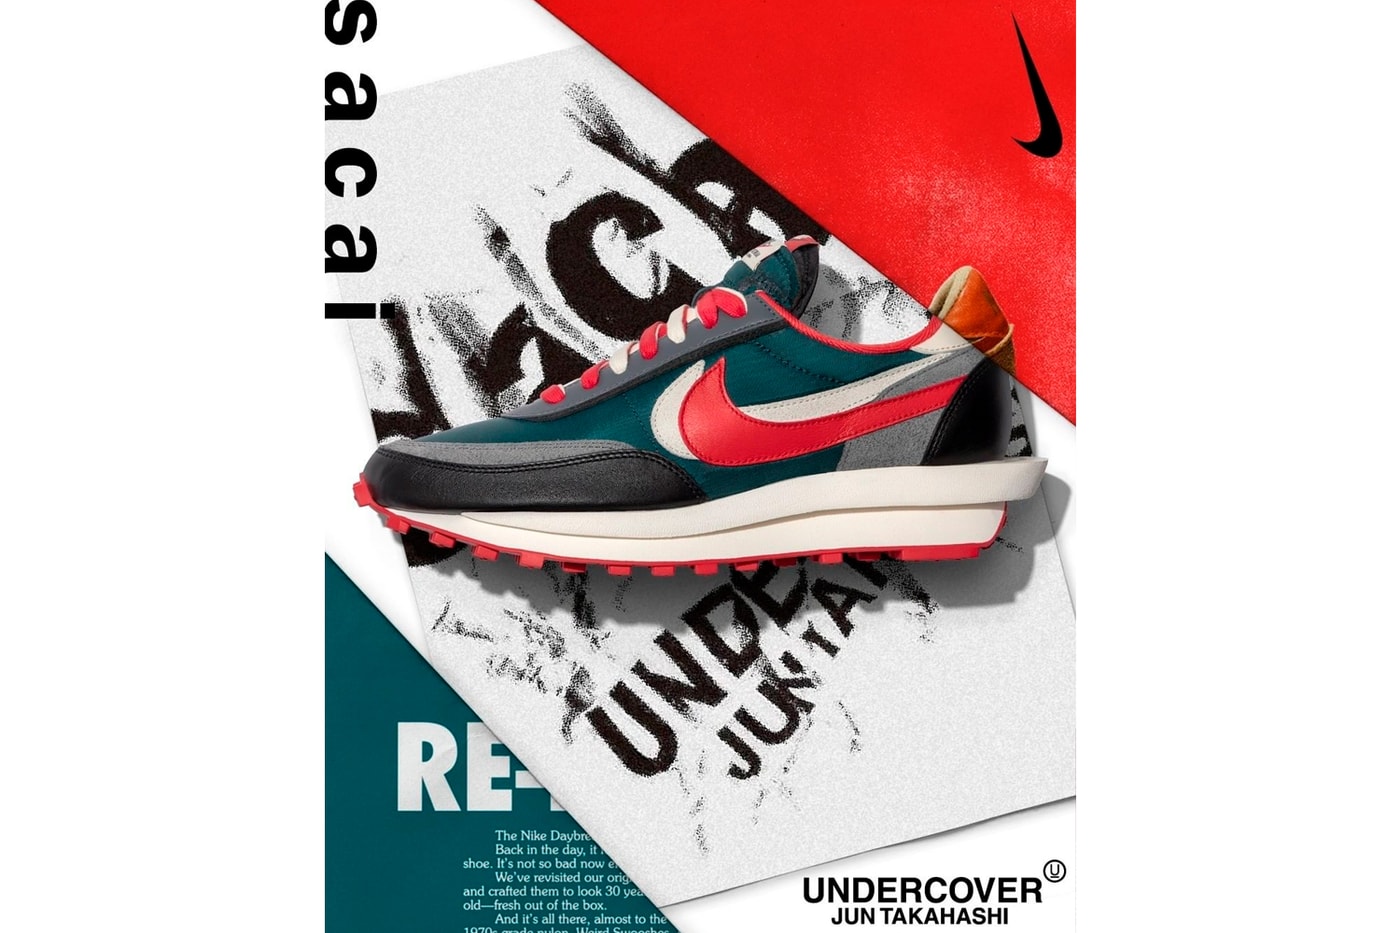 UNDERCOVER x sacai Nike LDWafflet